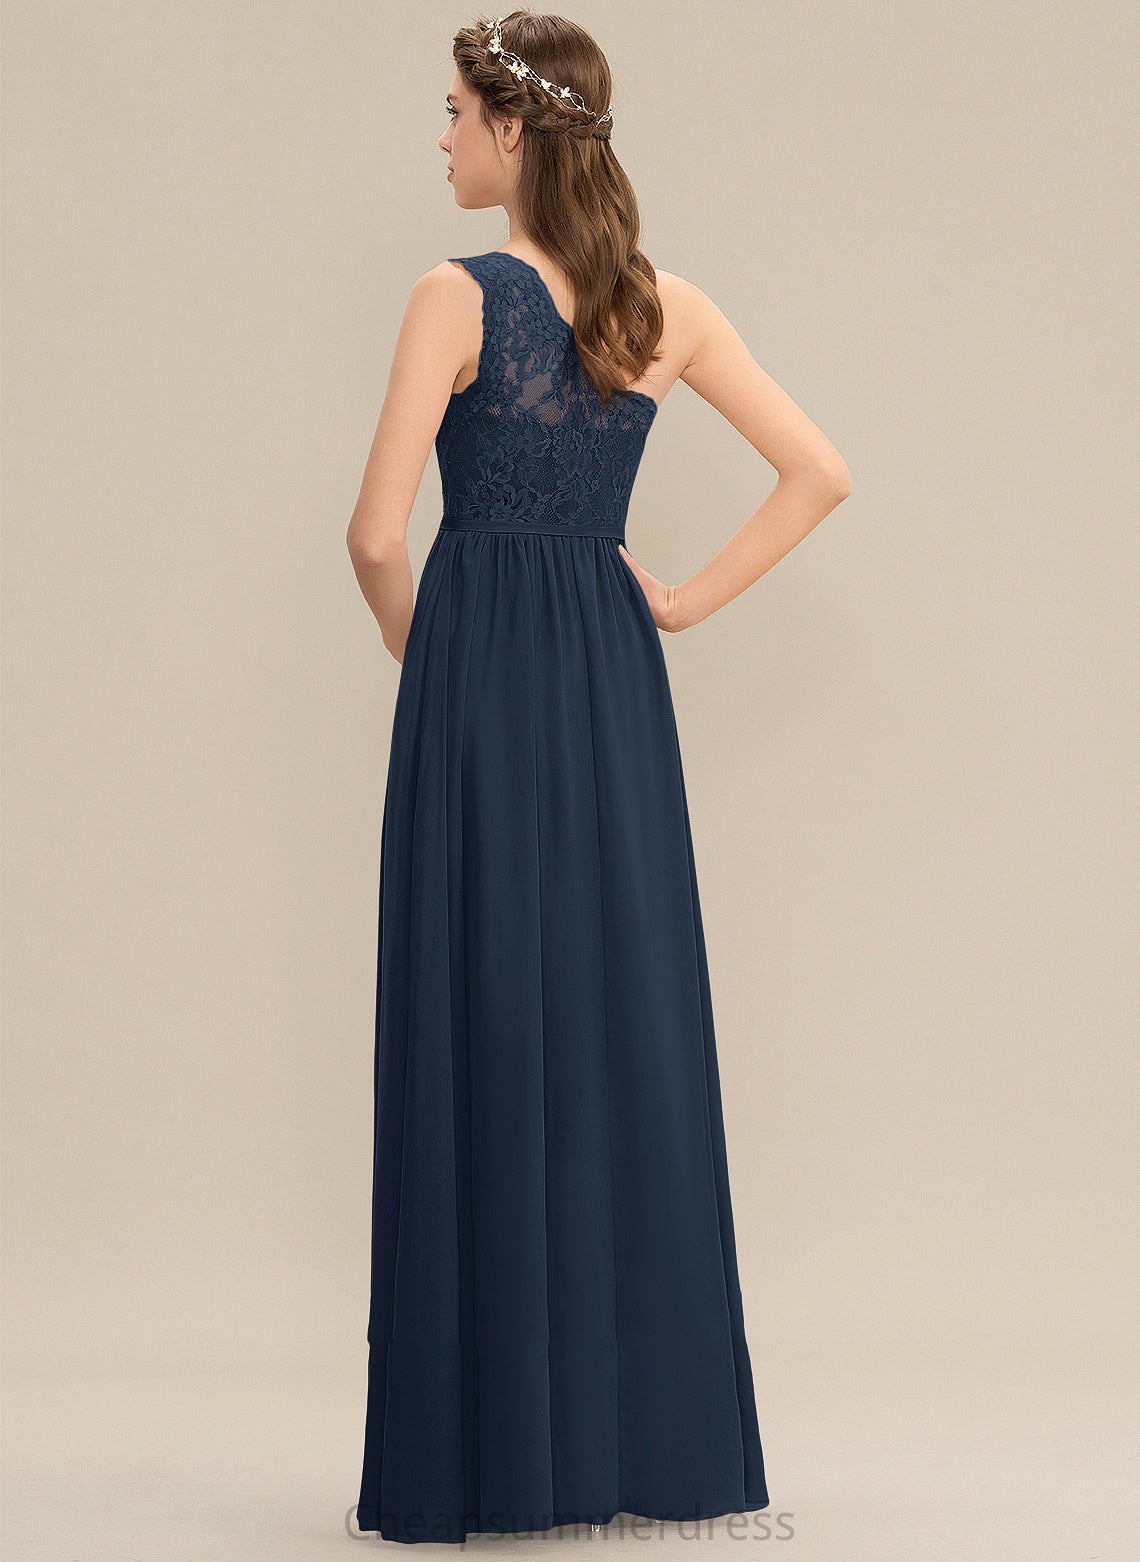 Fabric Embellishment Silhouette Length A-Line Floor-Length SplitFront One-Shoulder Neckline Carissa A-Line/Princess Natural Waist